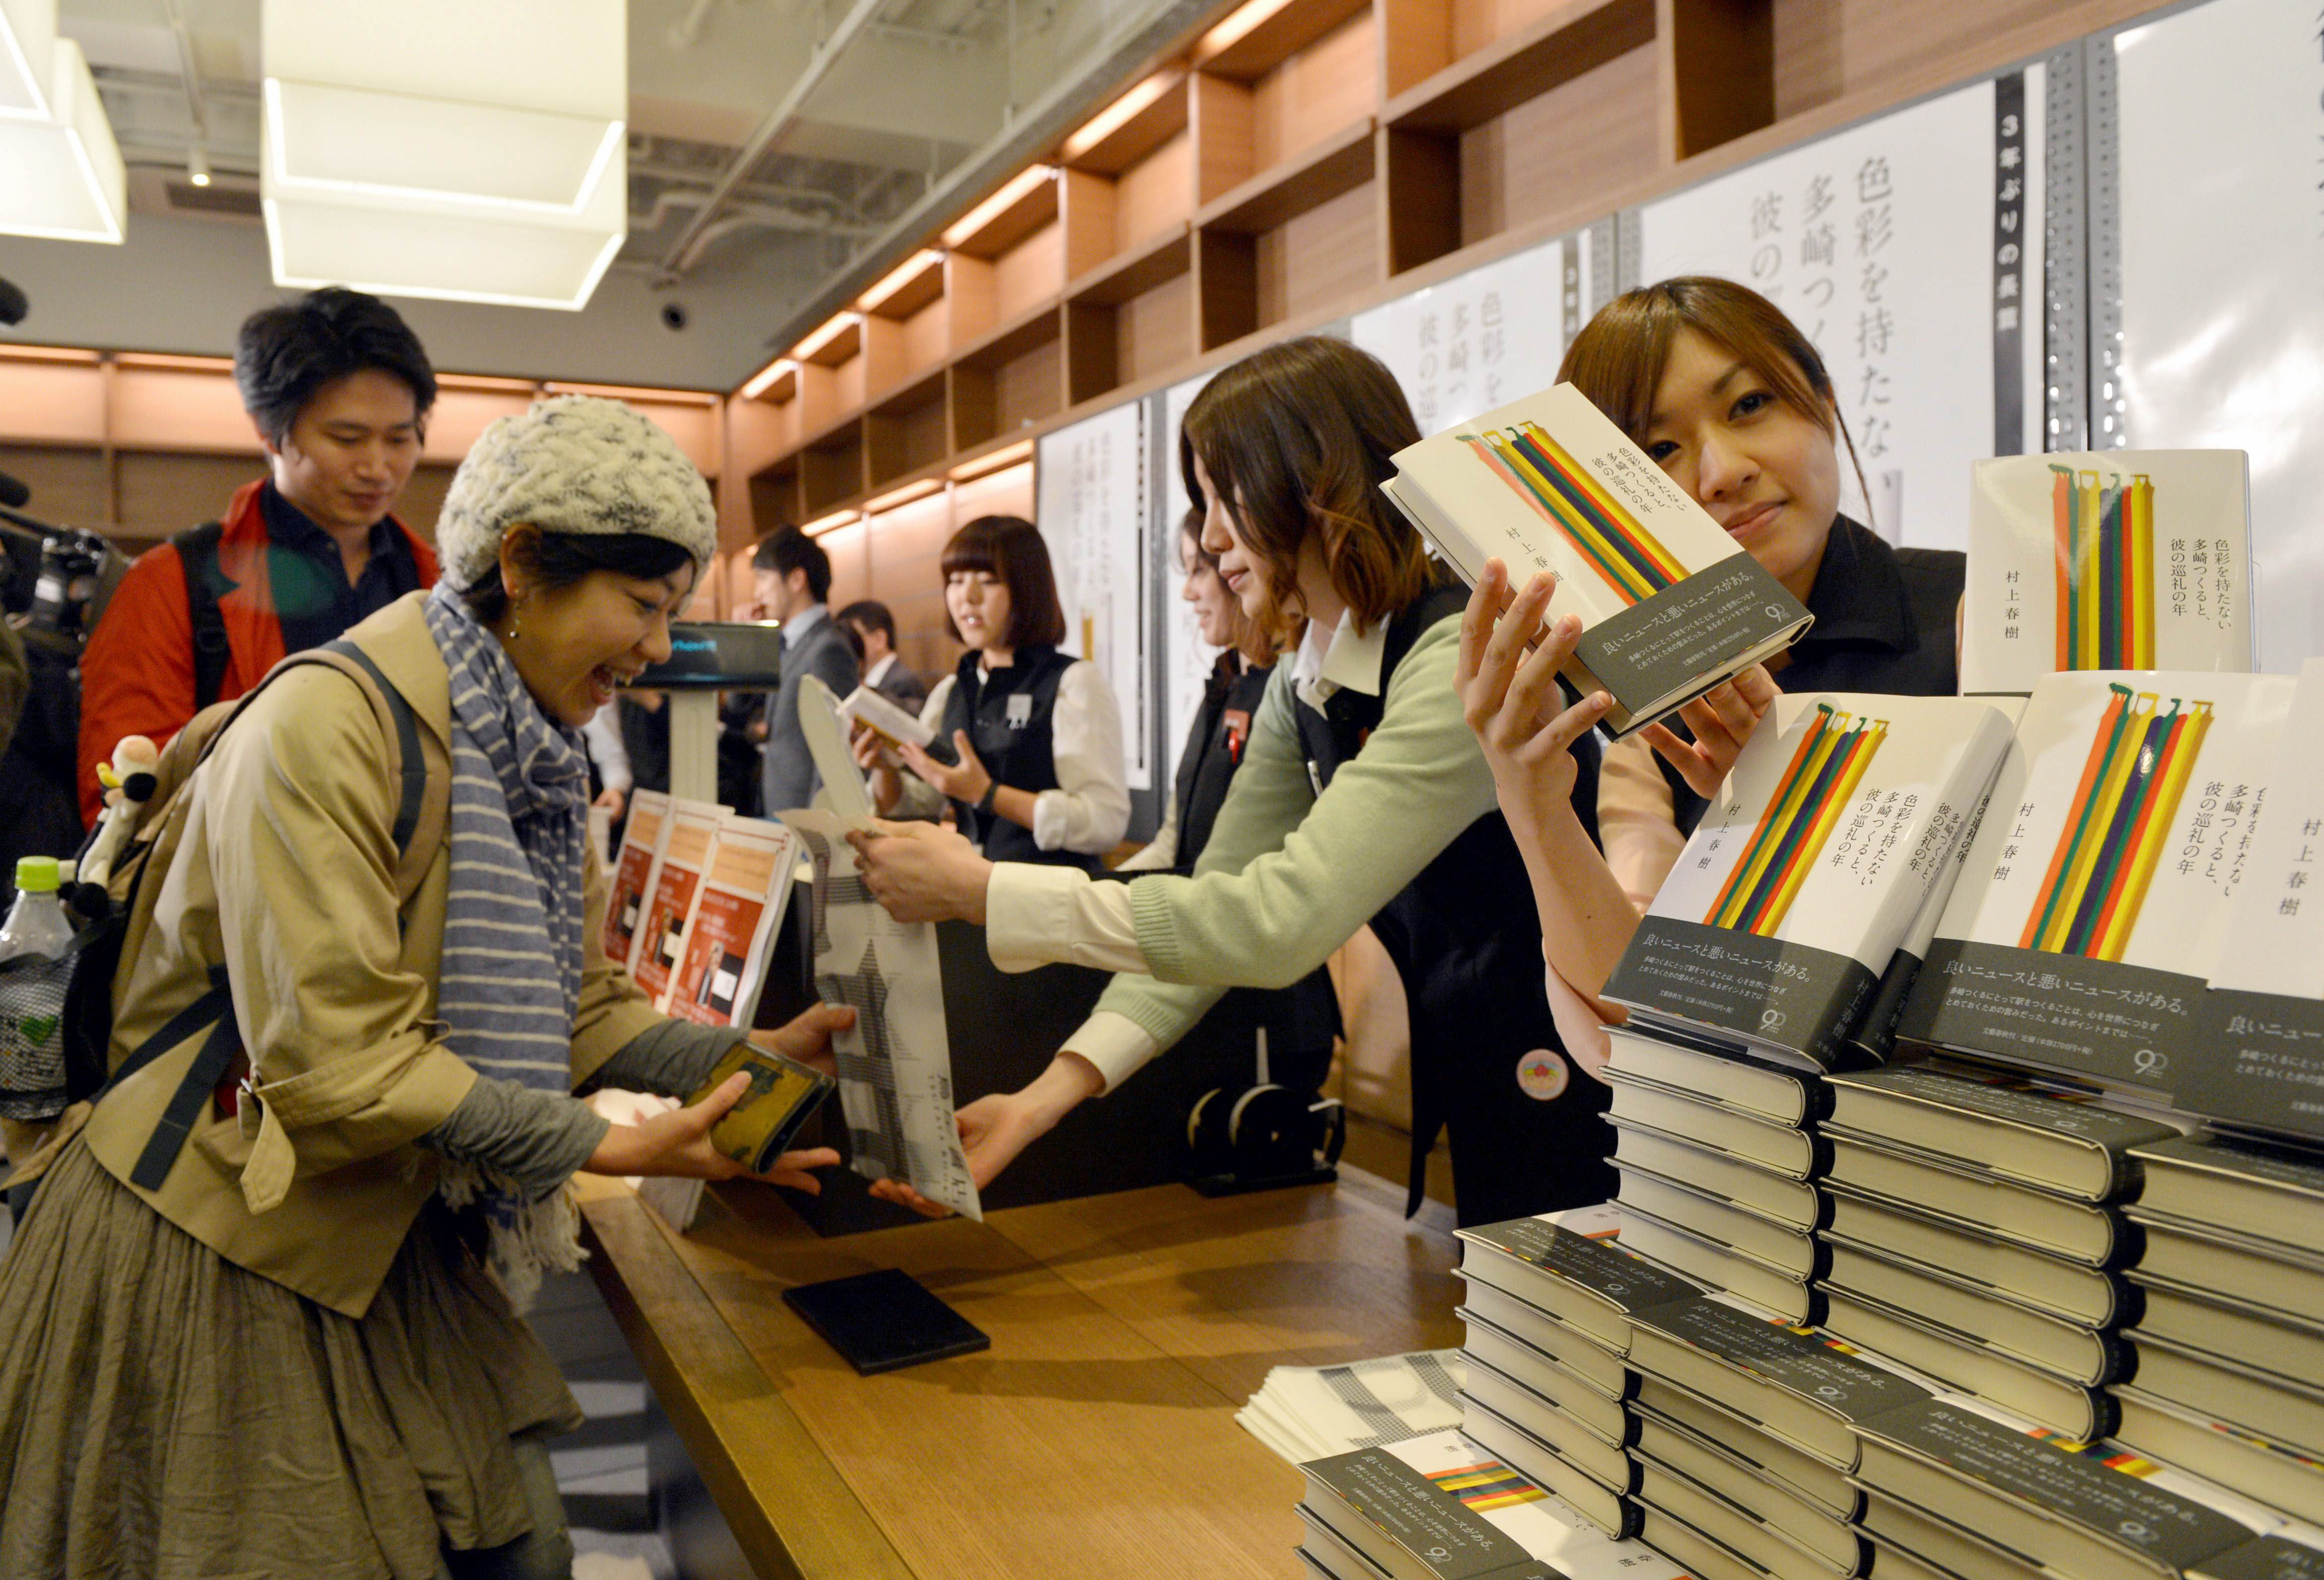 Покупка книг видео. Книжный магазин в Японии. Продавец в Японии. Очередь за книгами. Очередь в книжный магазин.